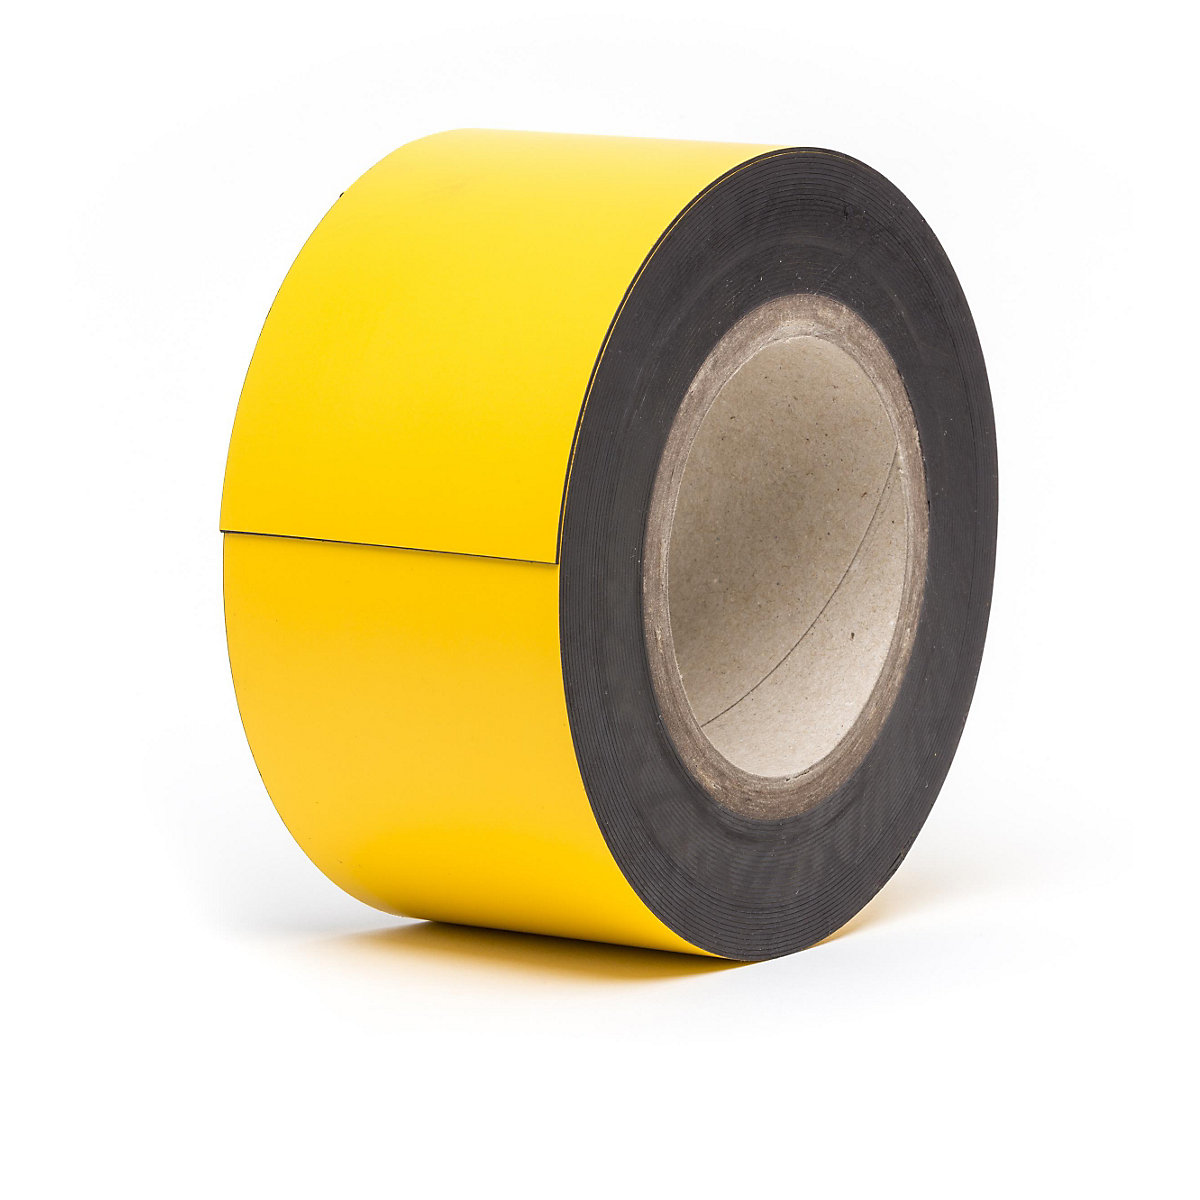 Magnetne skladišne pločice, u roli, u žutoj boji, visina 80 mm, dužina role 10 m-13